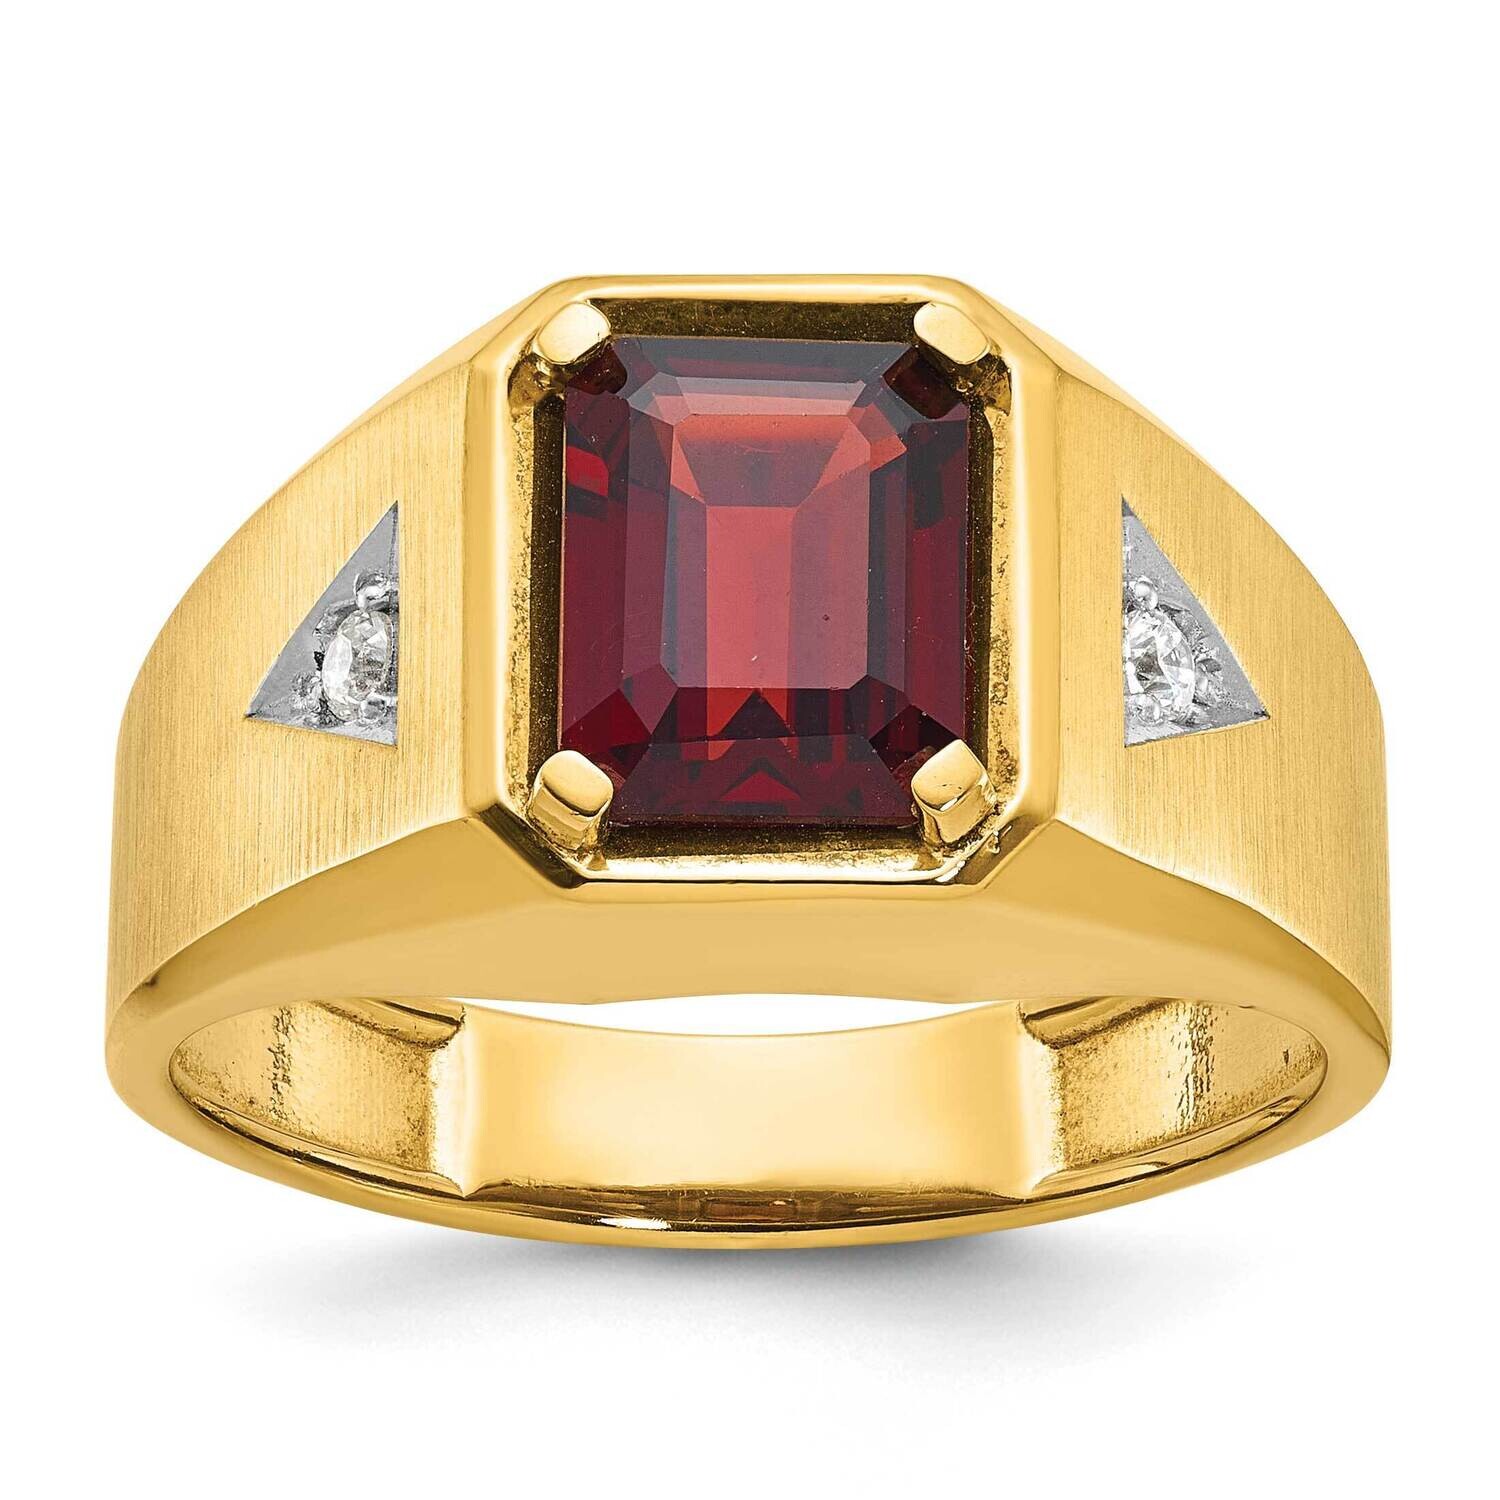 Ibgoodman Men's Polished Satin Gemstone Diamond Ring Mounting 14k Gold B57492-4Y